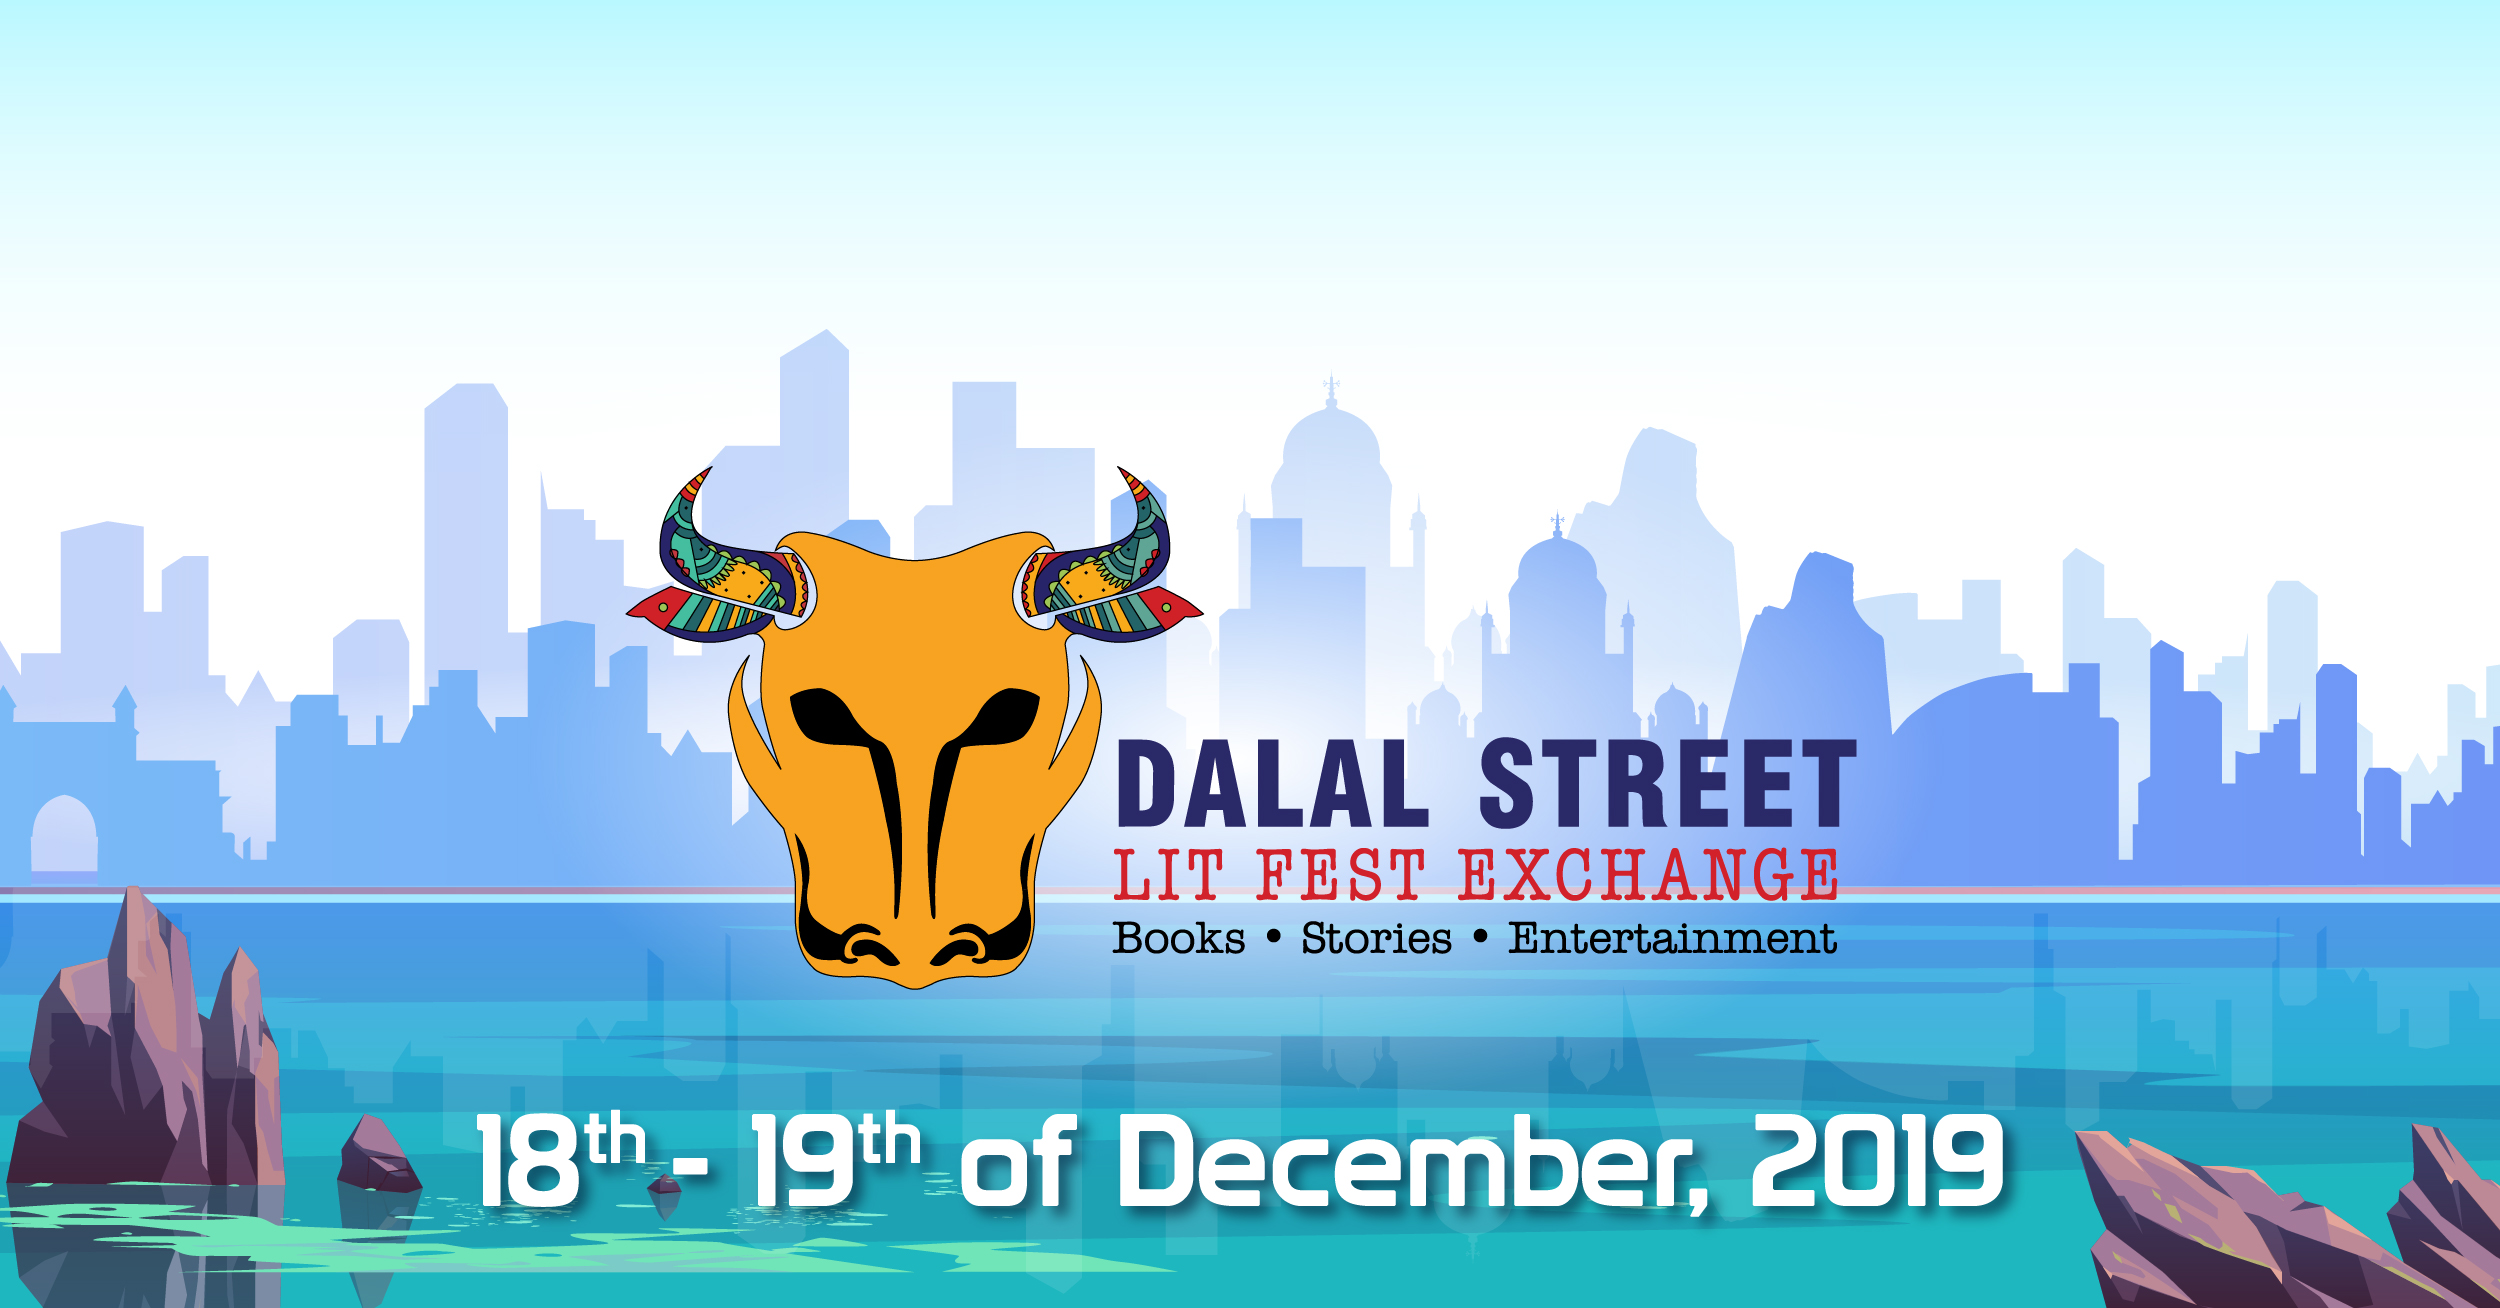 DALAL STREET - LIT FEST EXCHANGE 2019, Mumbai, Maharashtra, India